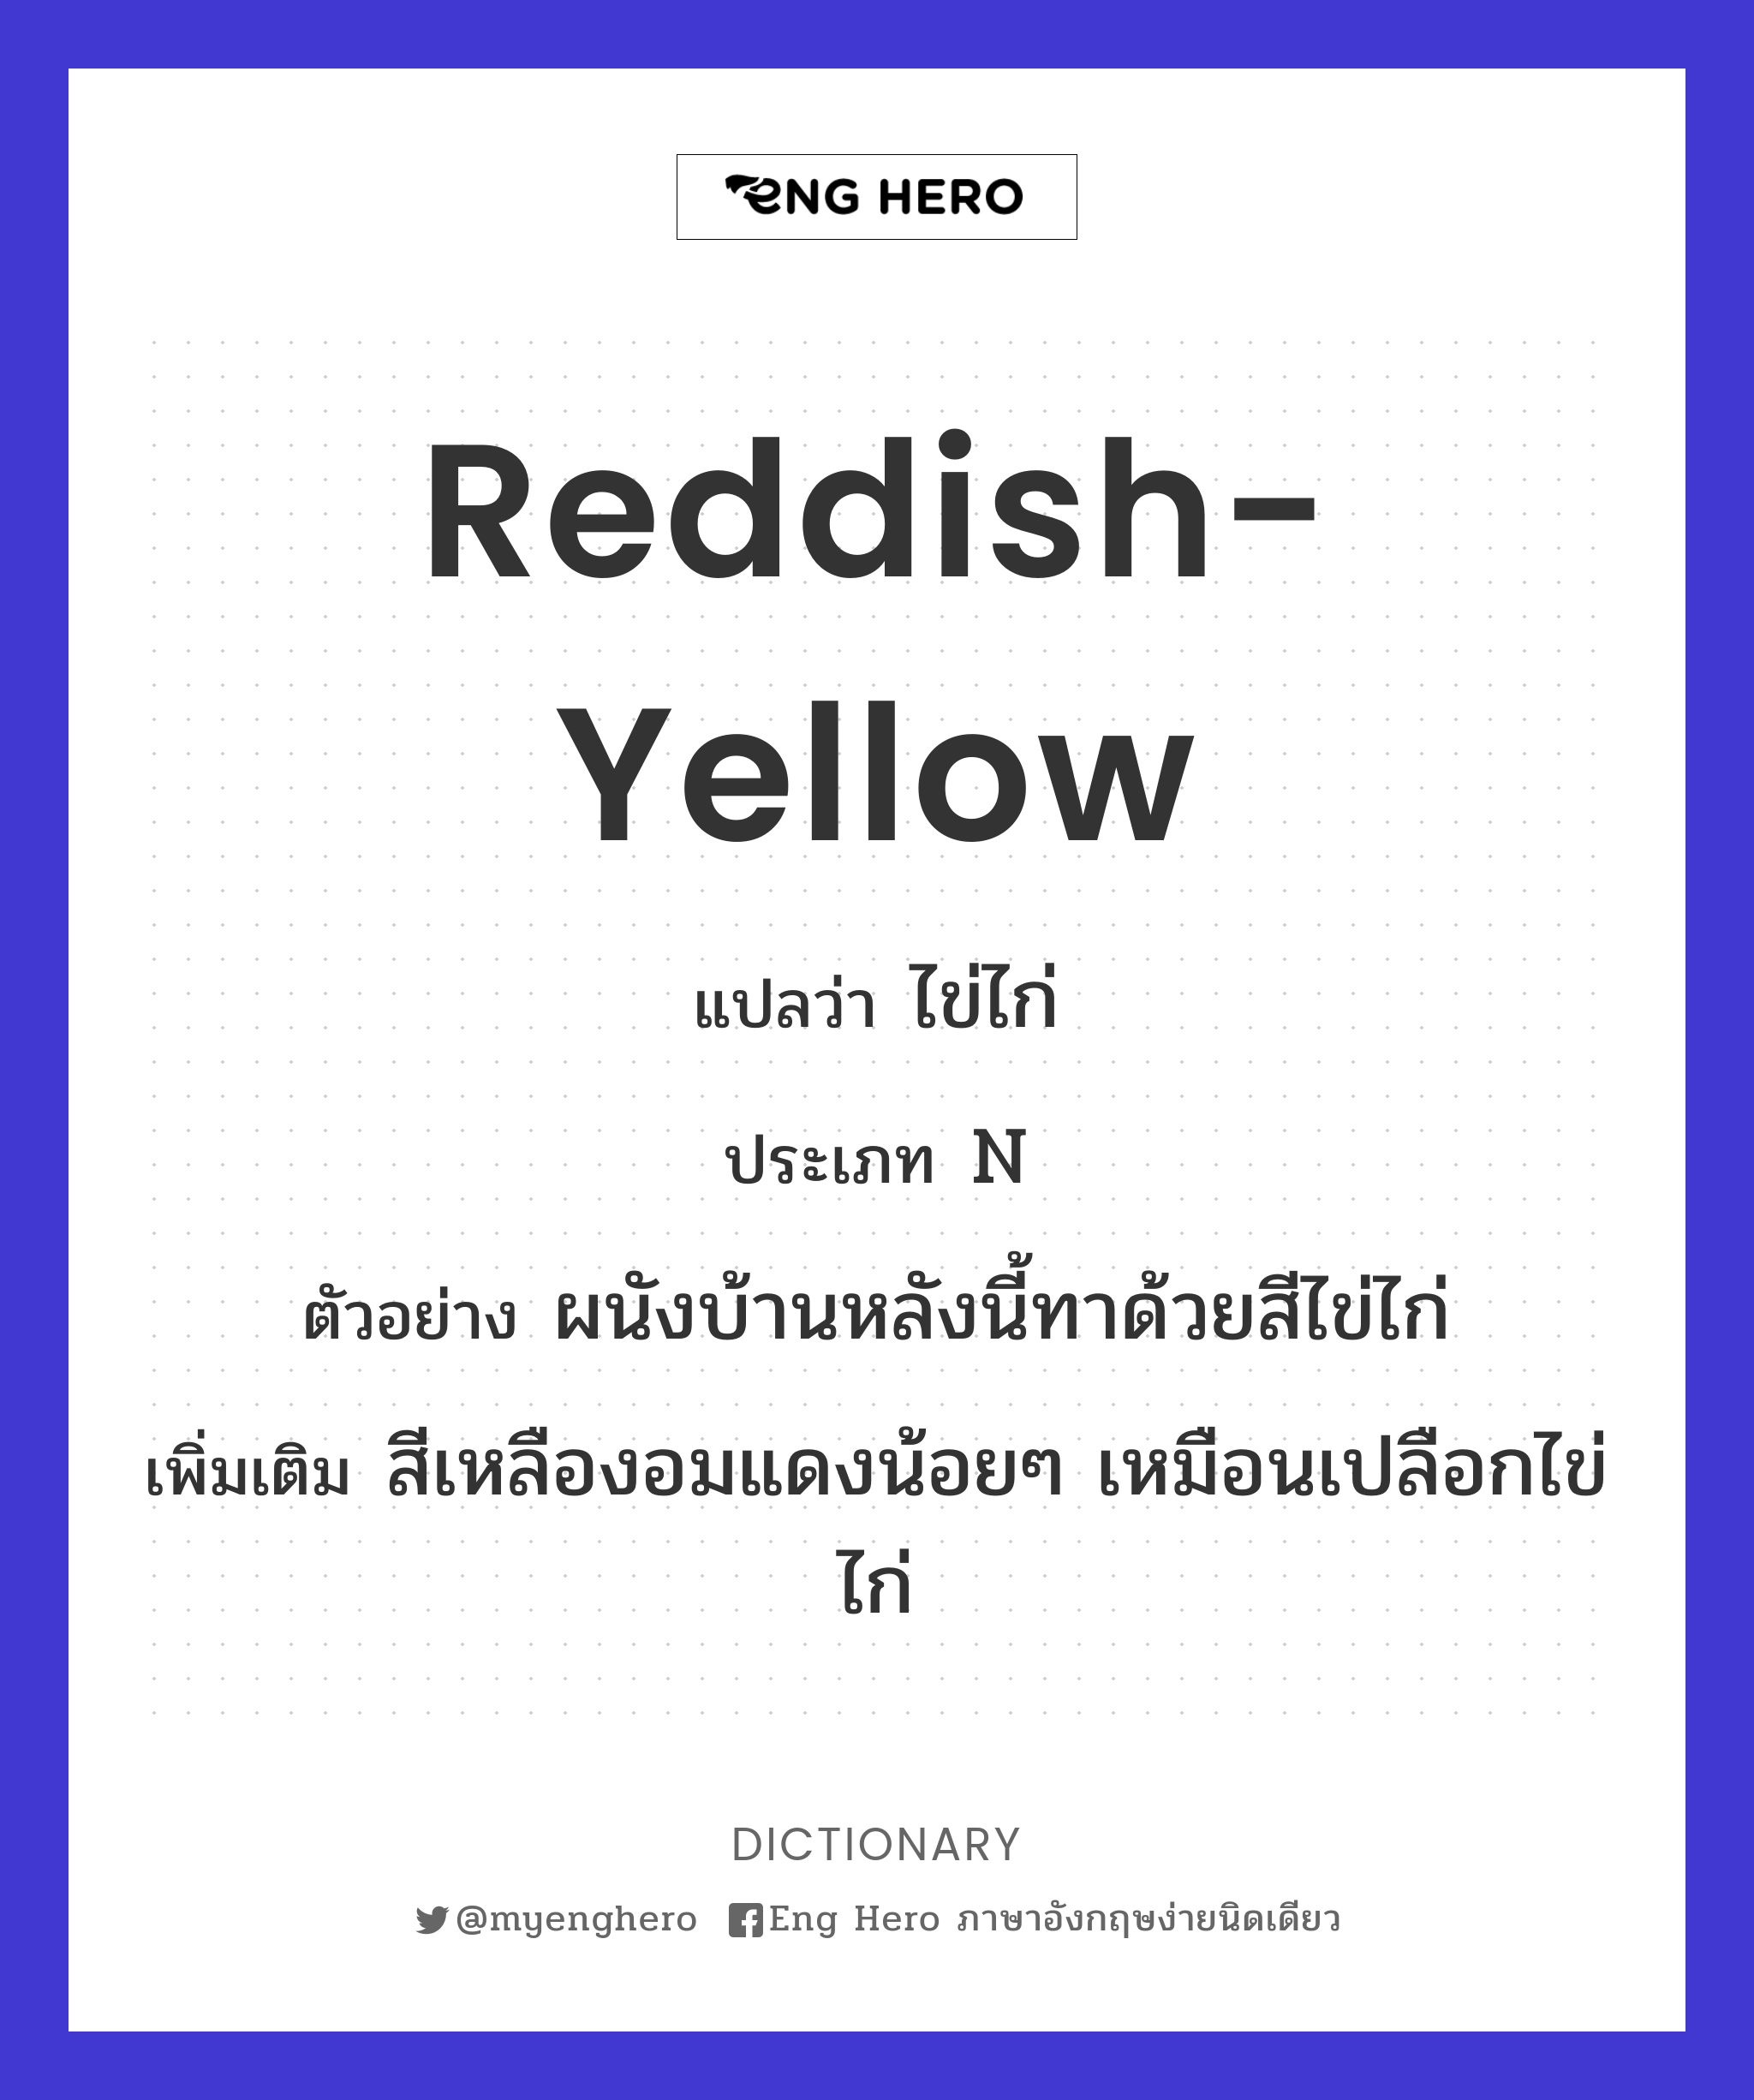 reddish-yellow